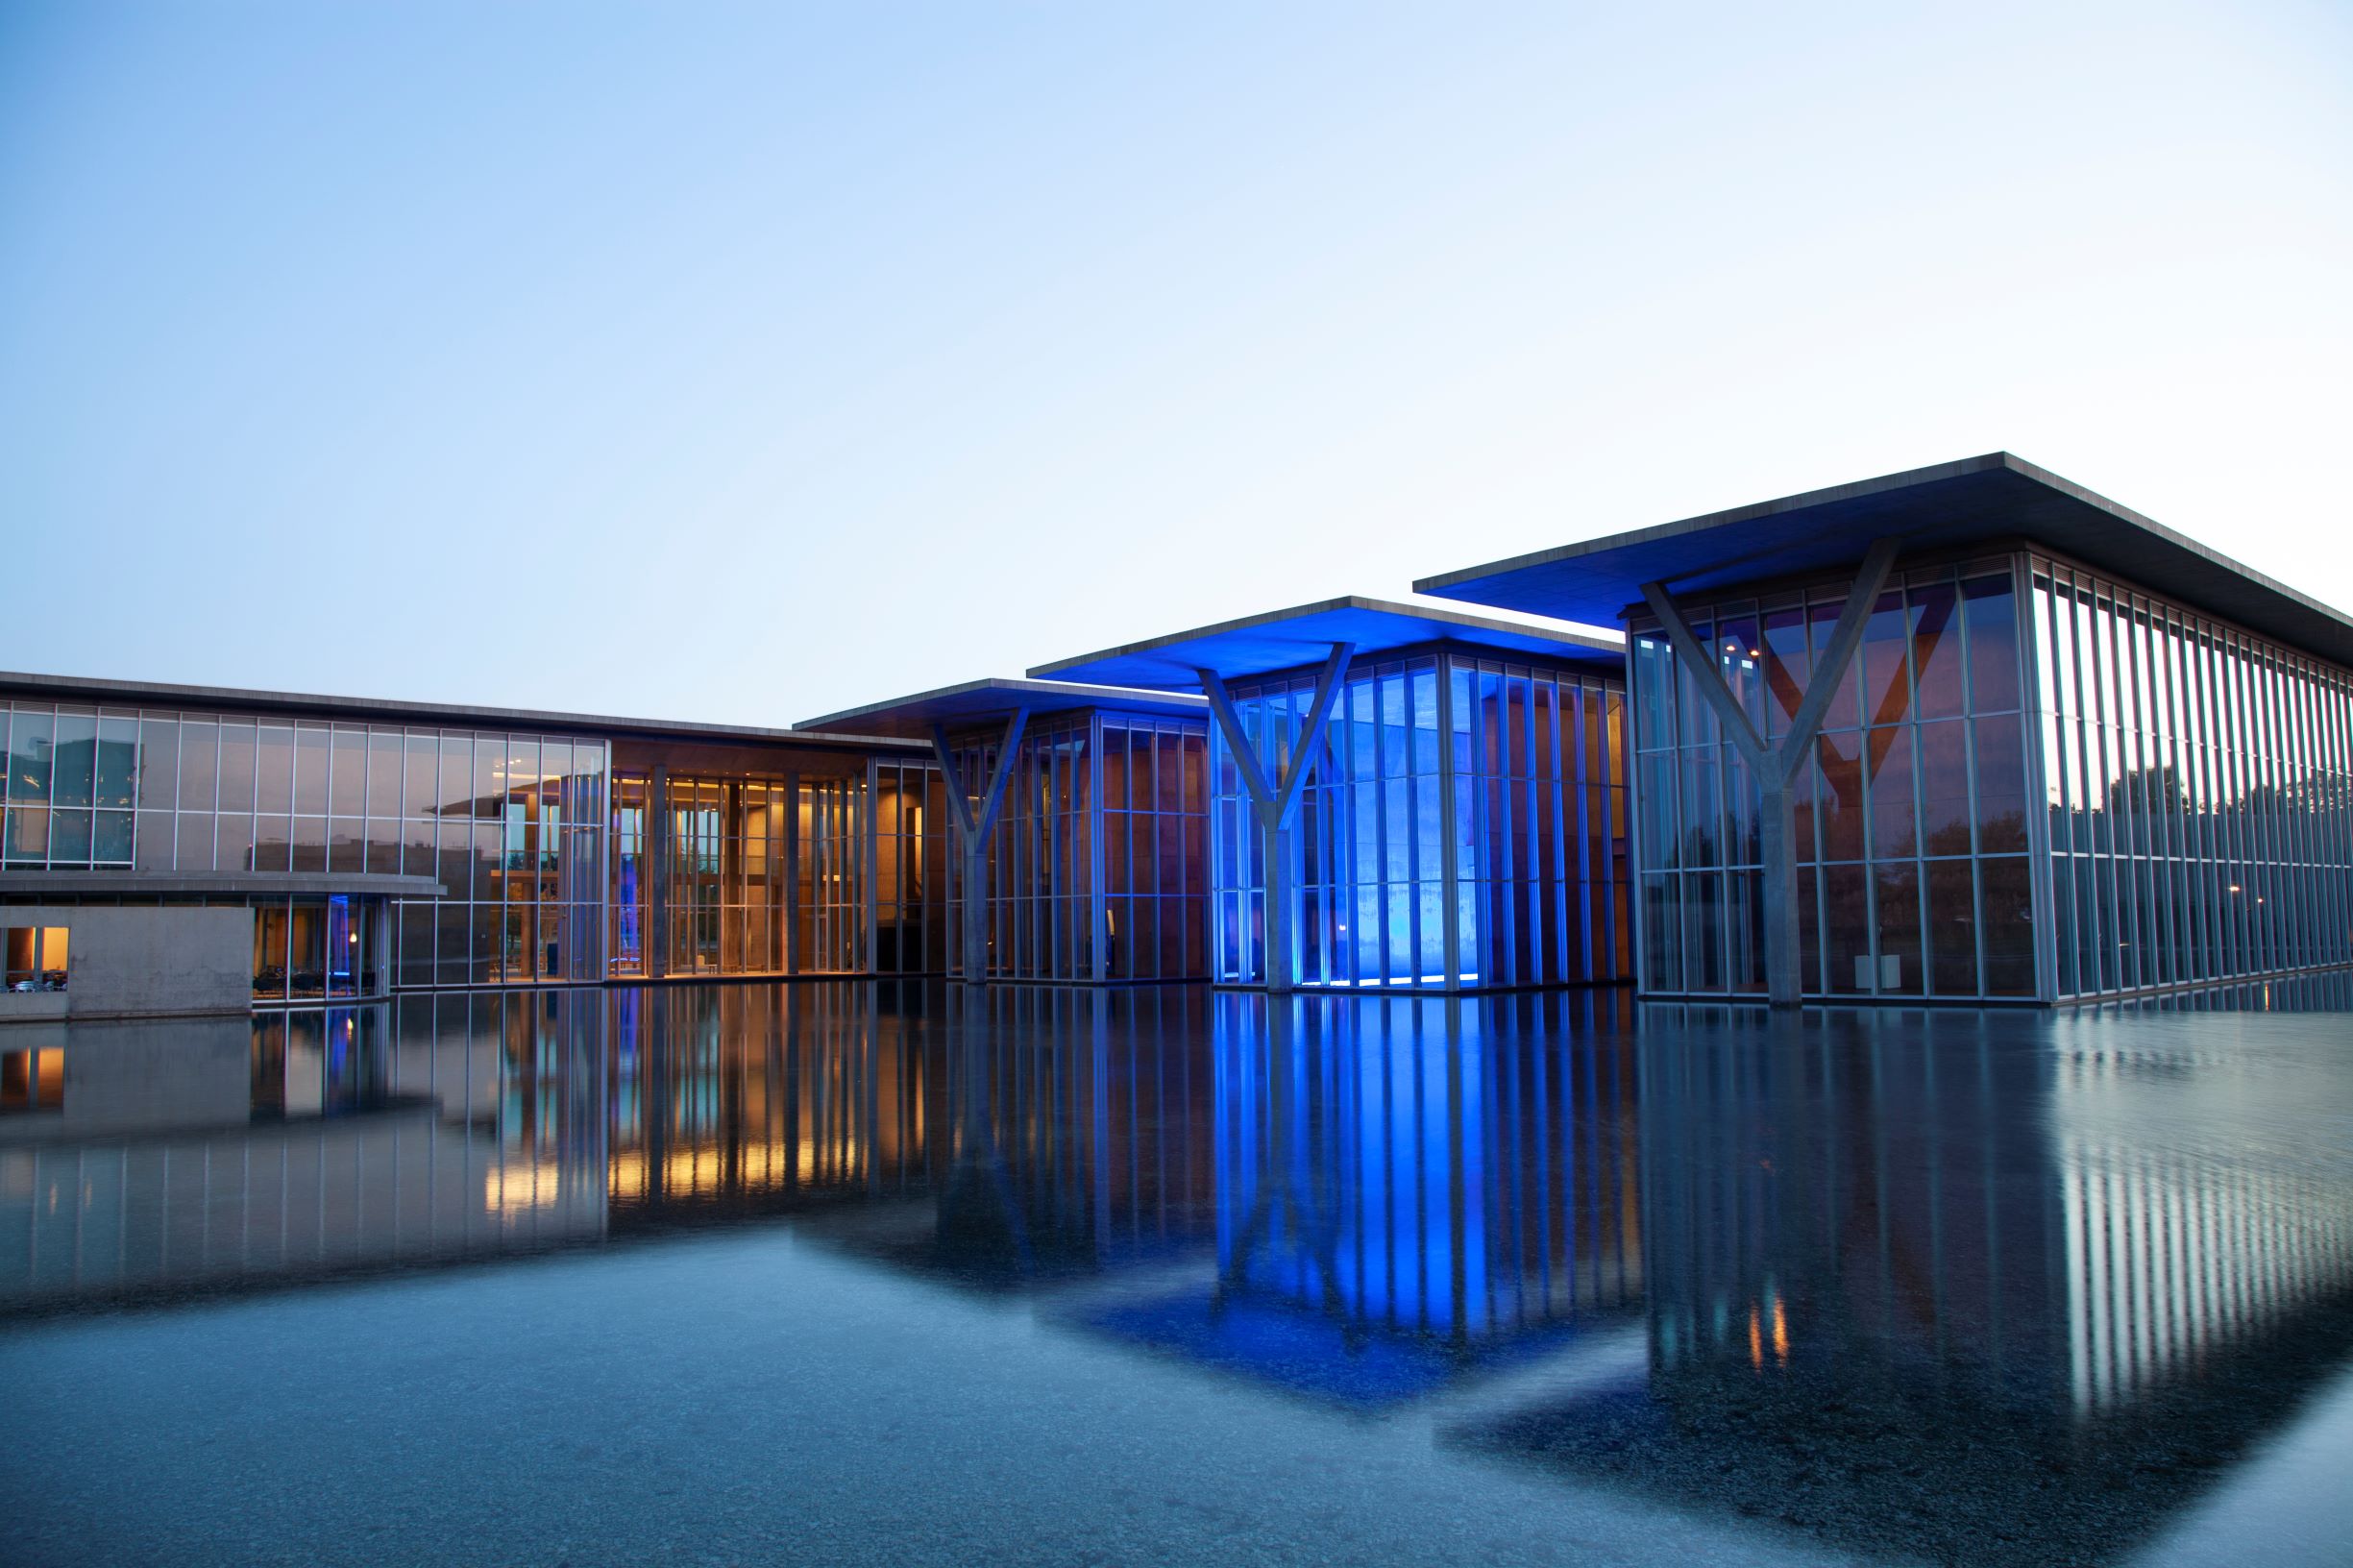 The Modern | Tadao Ando Building